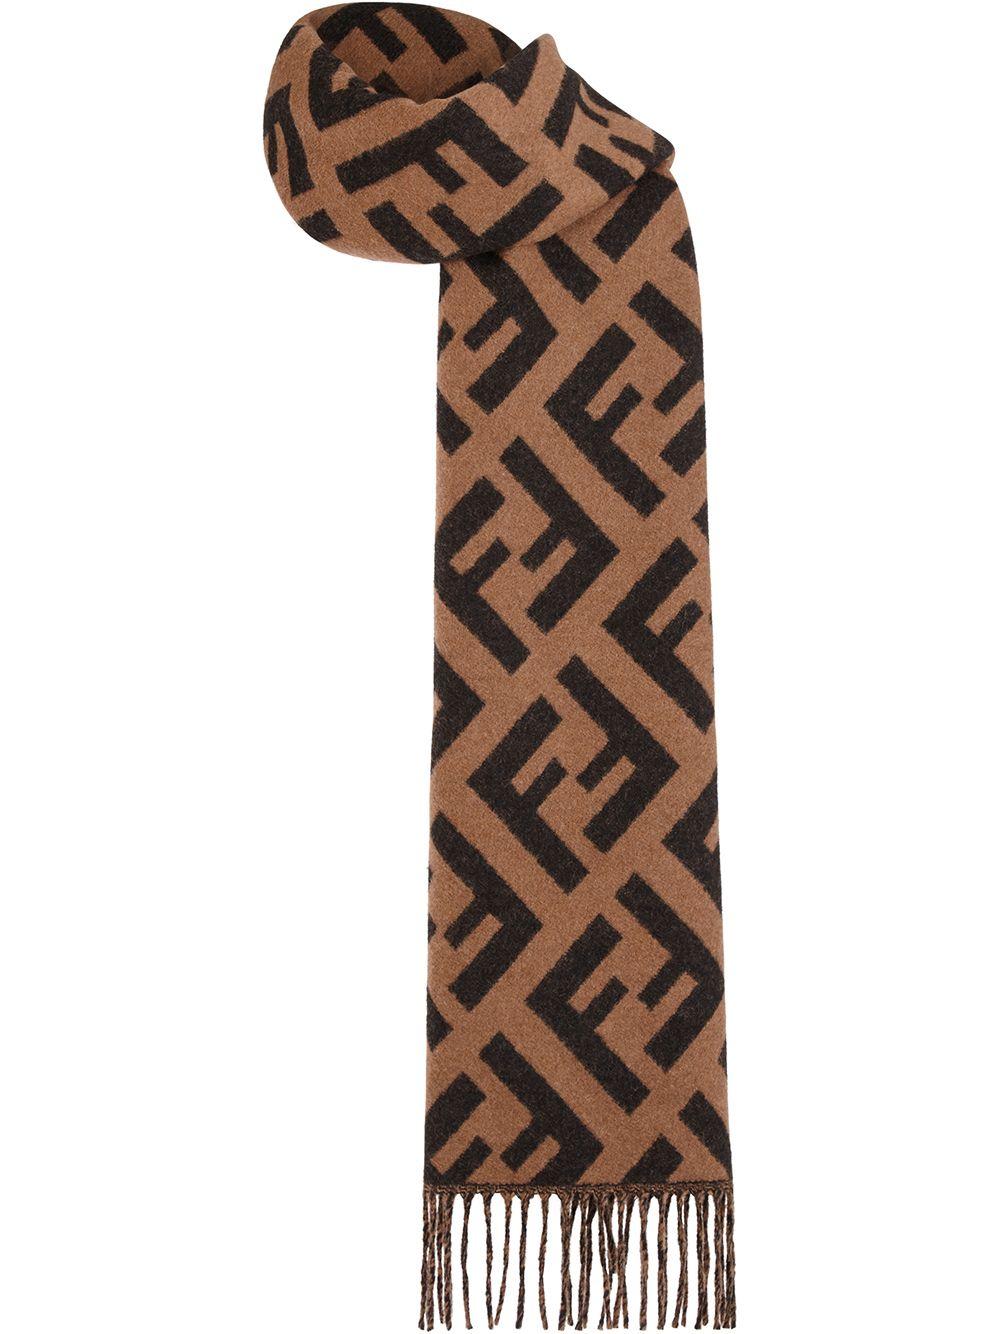 Fendi Jacquard Knit Ff Logo Scarf in Brown - Lyst